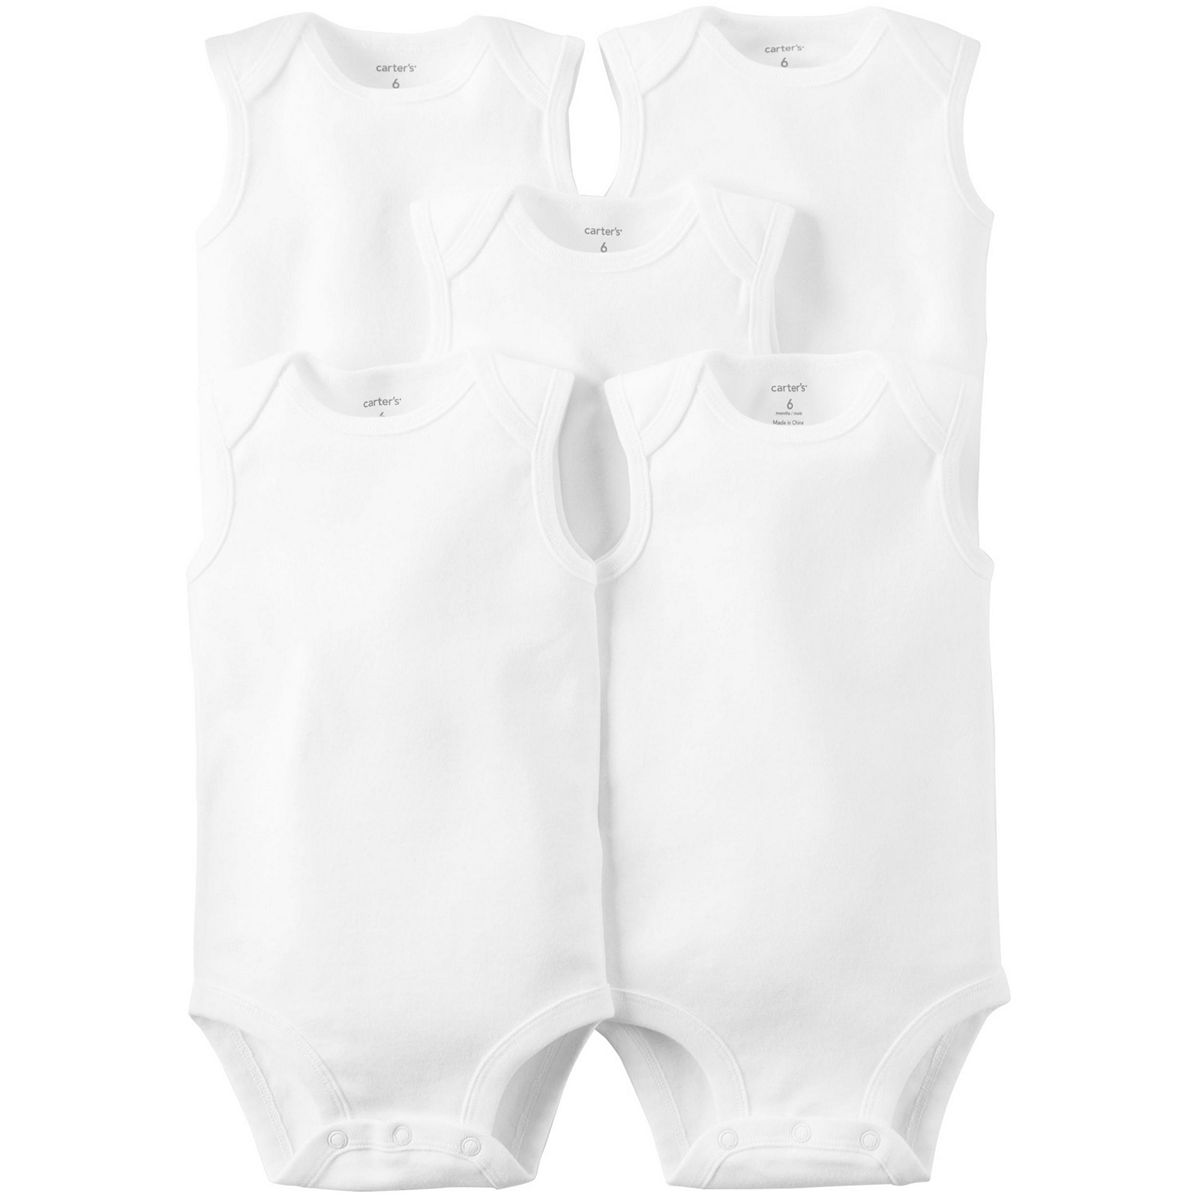 Baby Carter's 5-pk. Sleeveless White Bodysuits